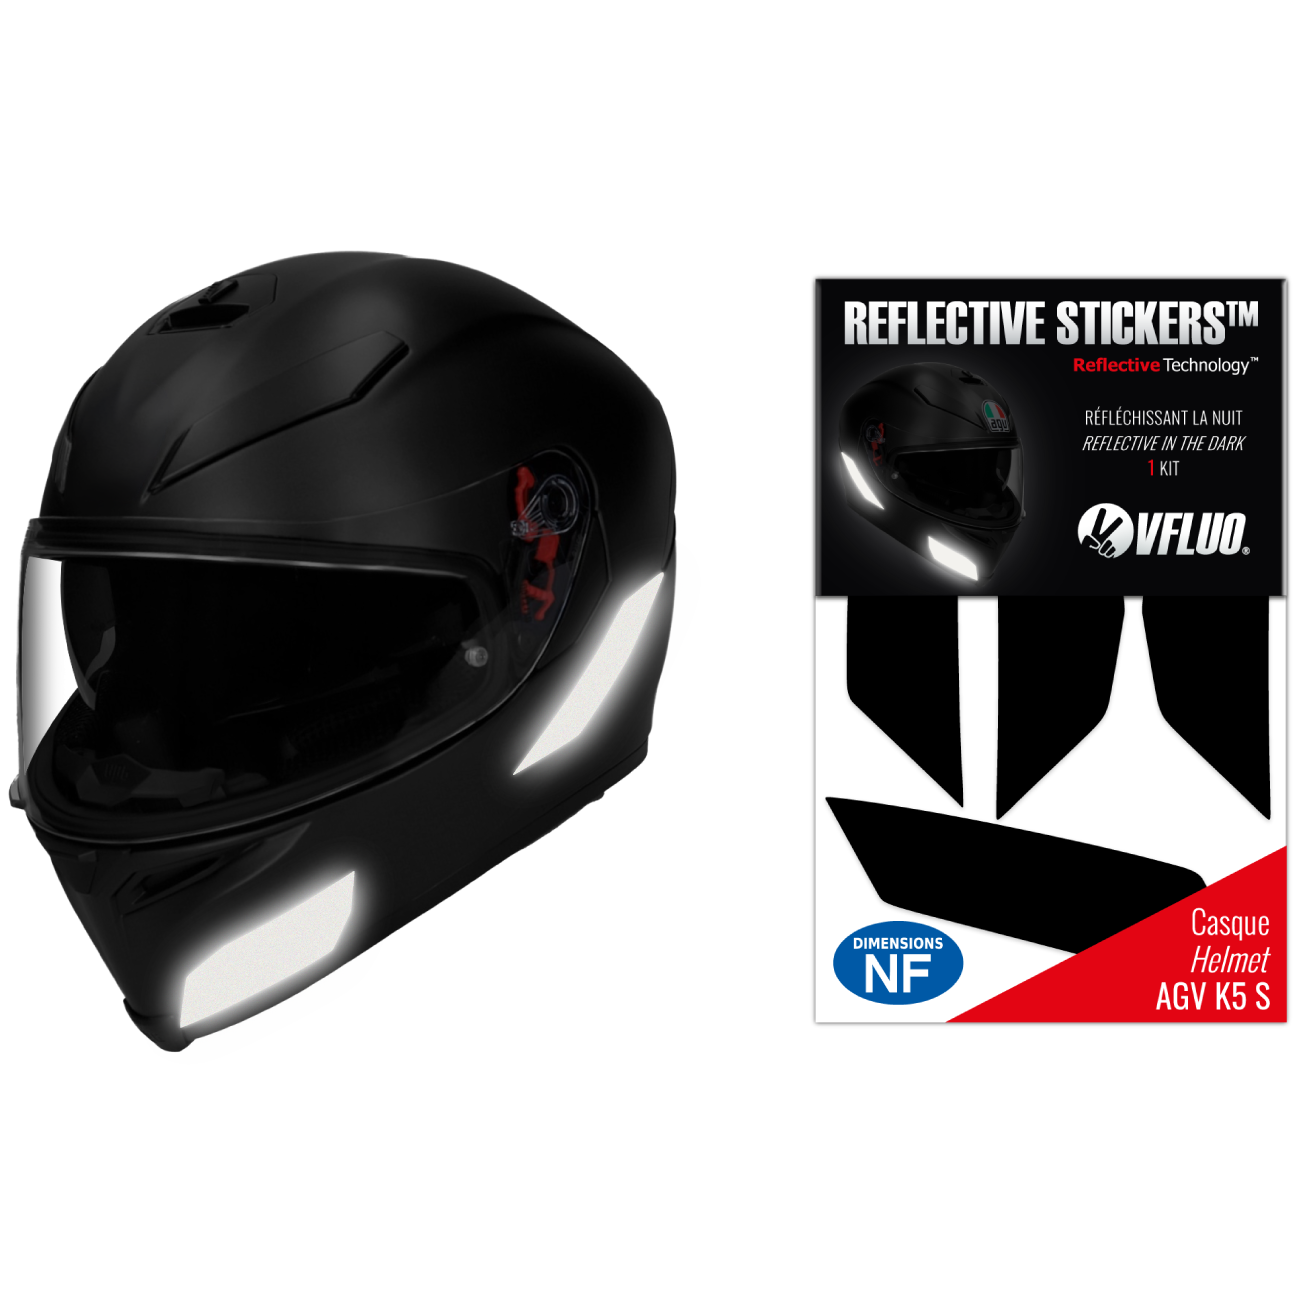 Stickers réfléchissants homologués casque AGV K5 S™ 3M™ 🇫🇷 – VFLUO